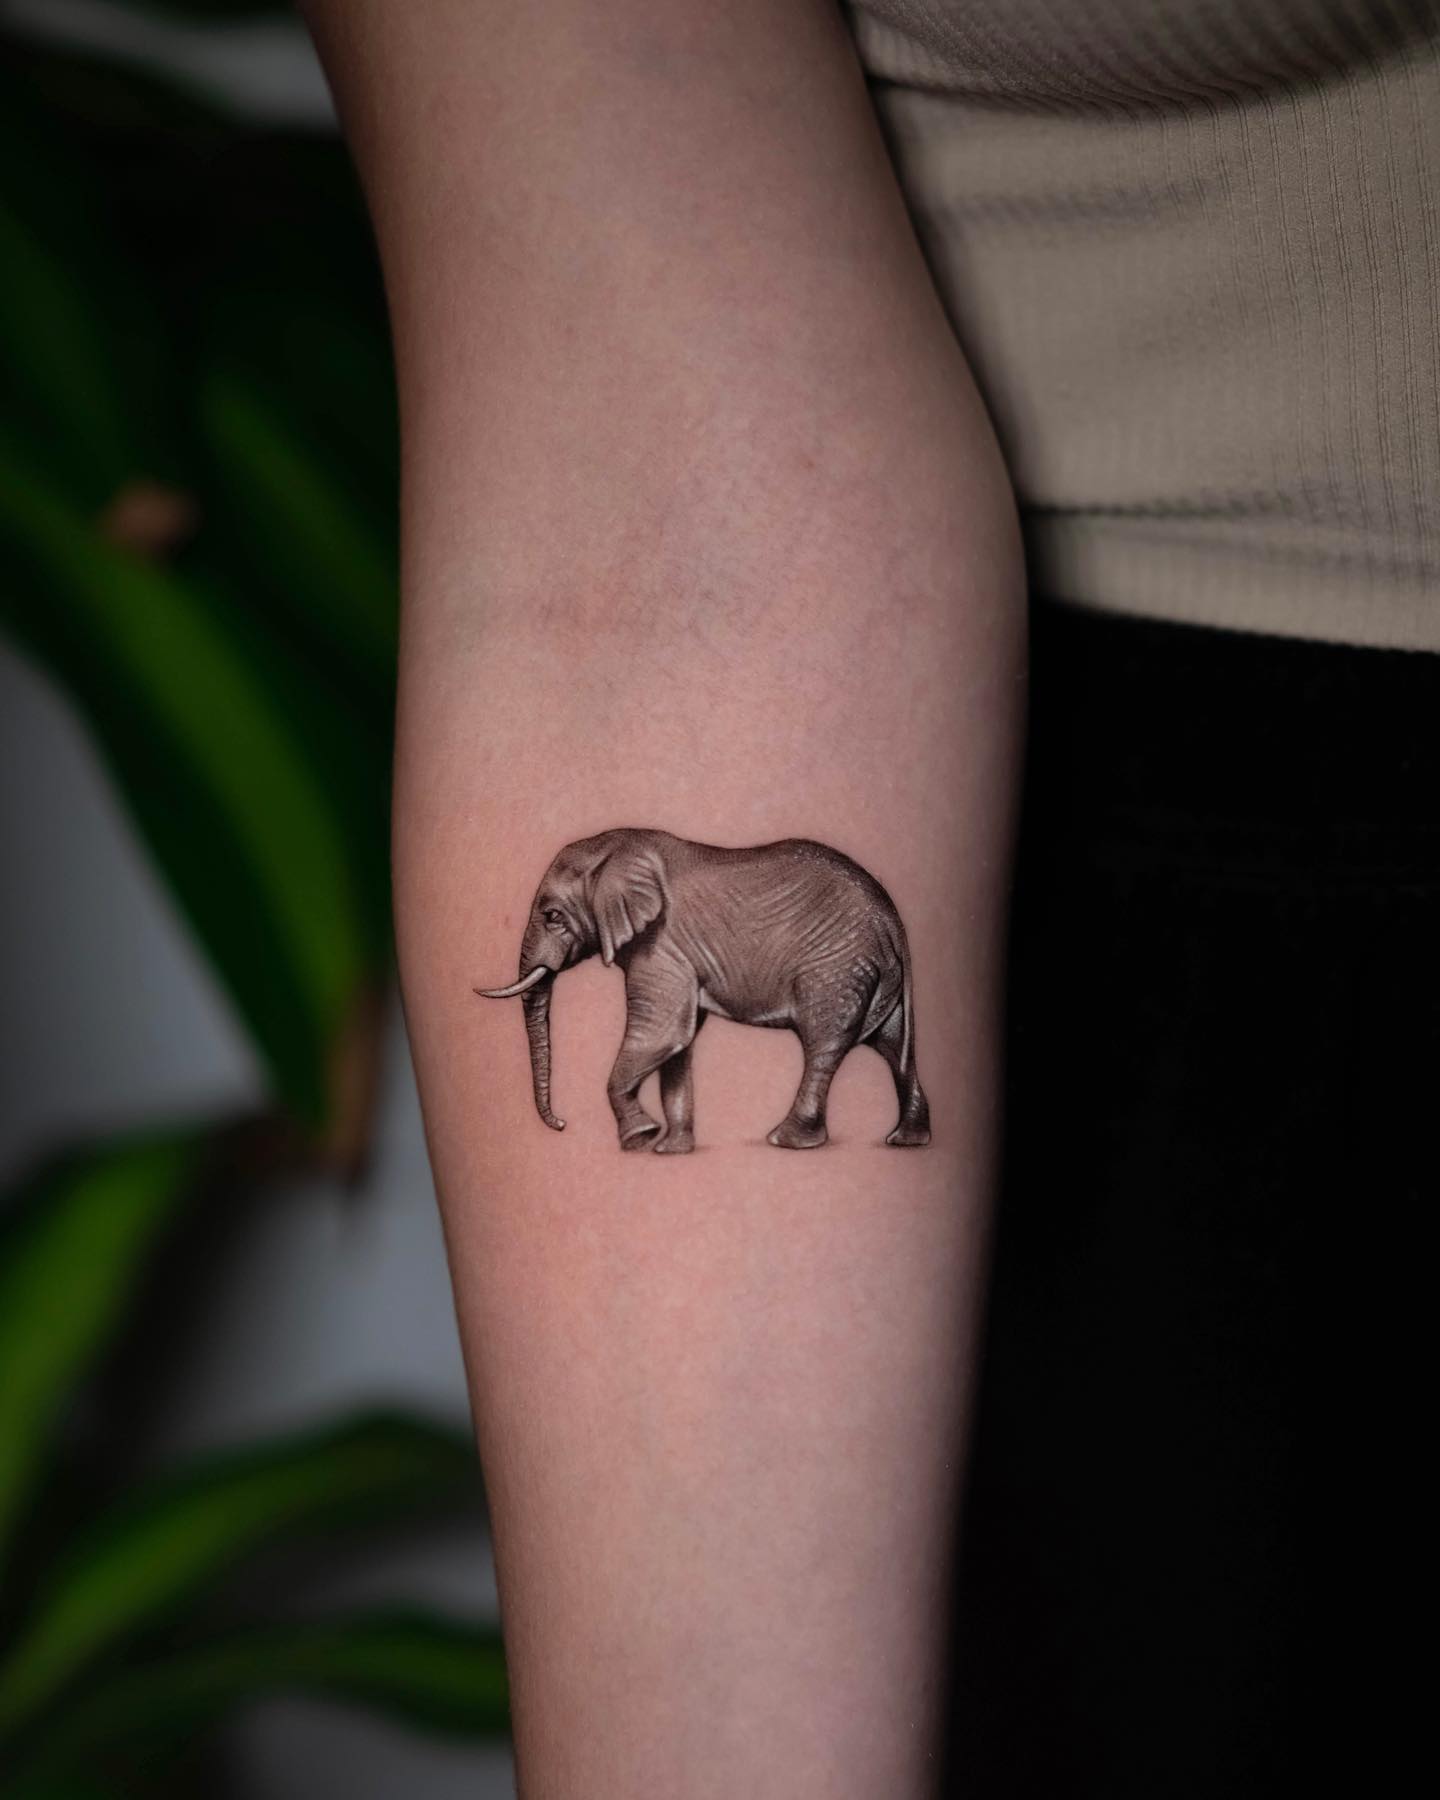 Tatuaje realista de elefante.